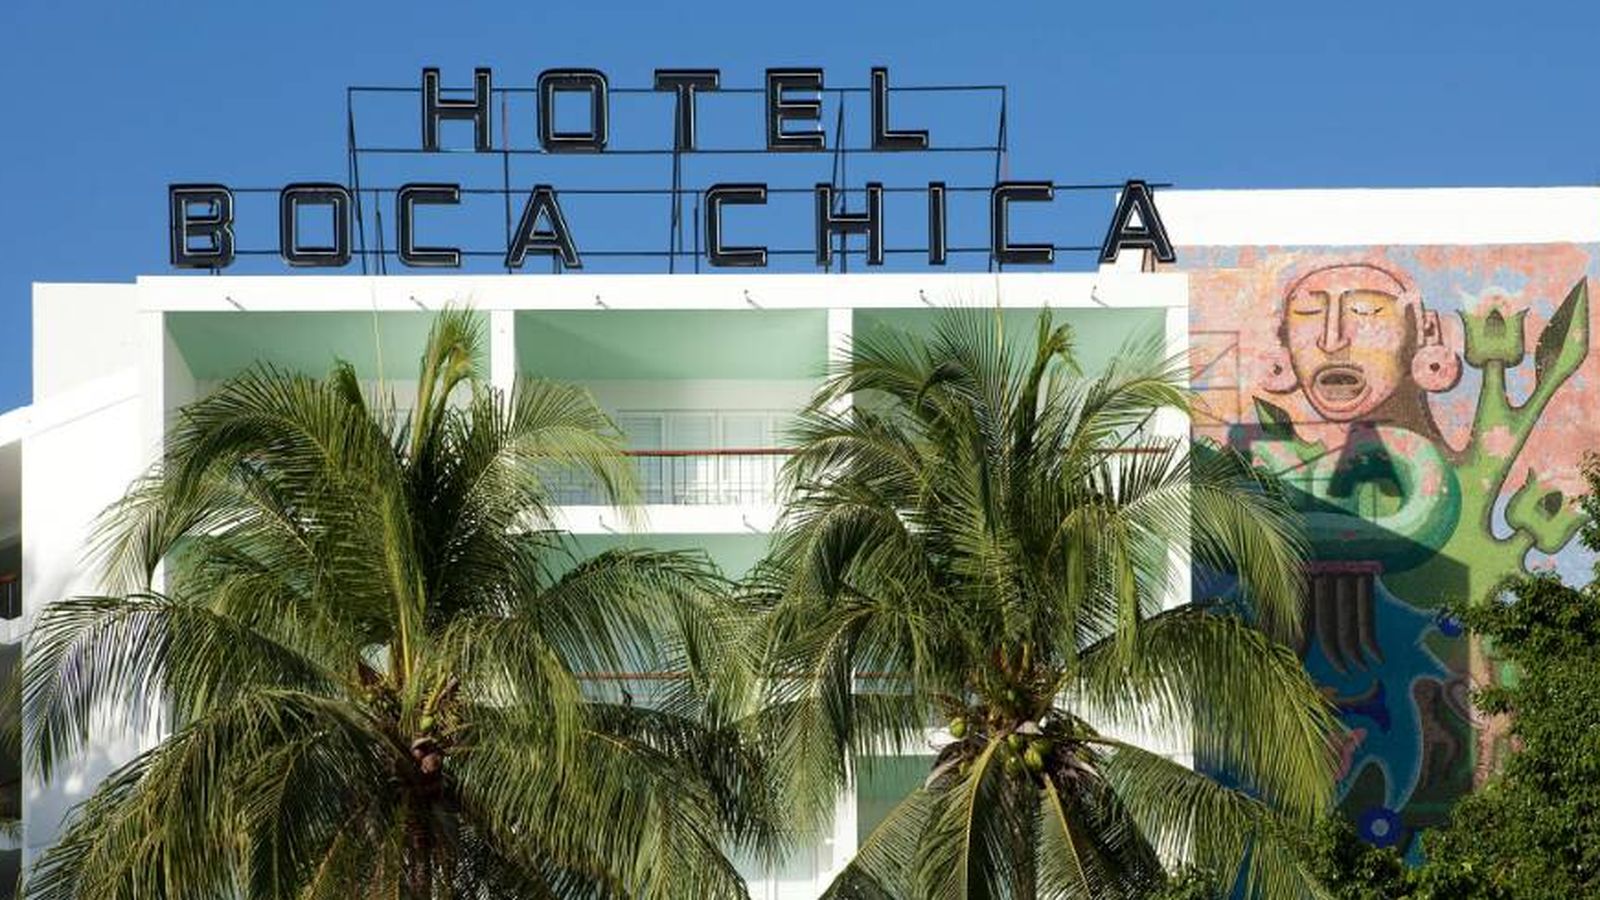 Hotel Boca Chica en Acapulco, de Frida Escobedo en colaboración con José Rojas. (Undine Pröhl/Jim Franco)